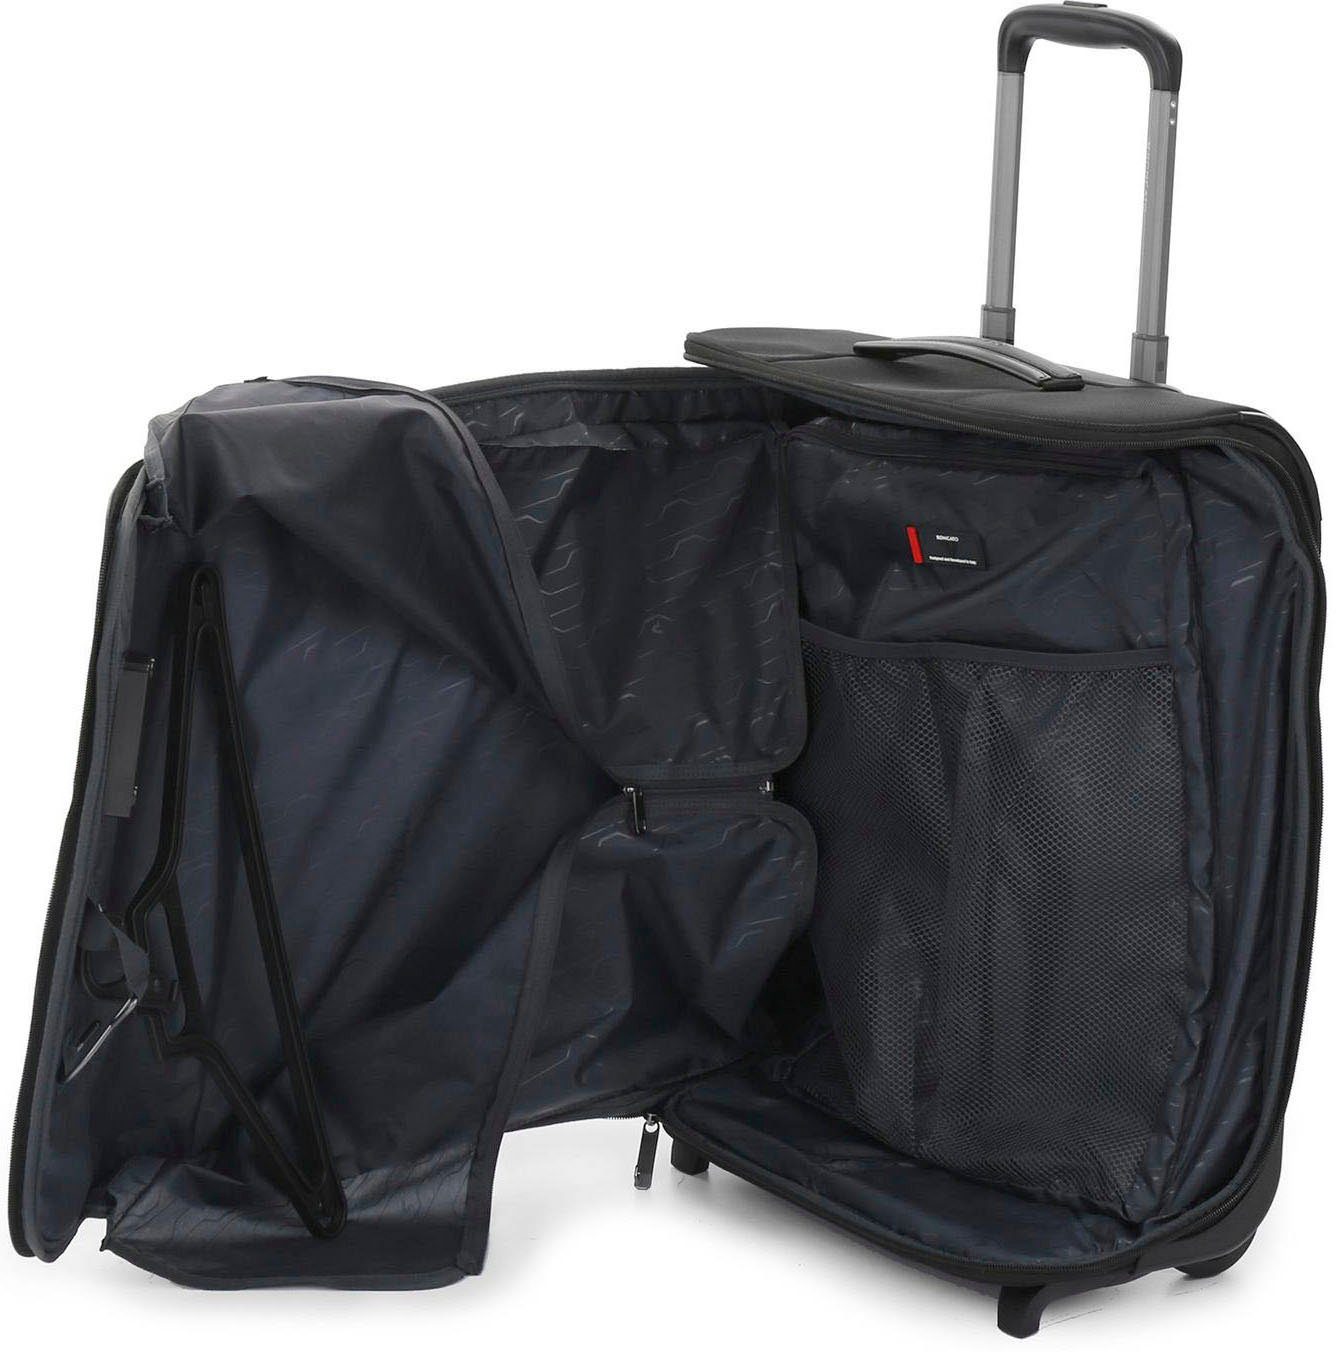 Kabinentrolley-Kleidersack auf Rollen, in der 4.0 Kleiderbügel schwarz BIZ mit Kabine Kleidersack RONCATO